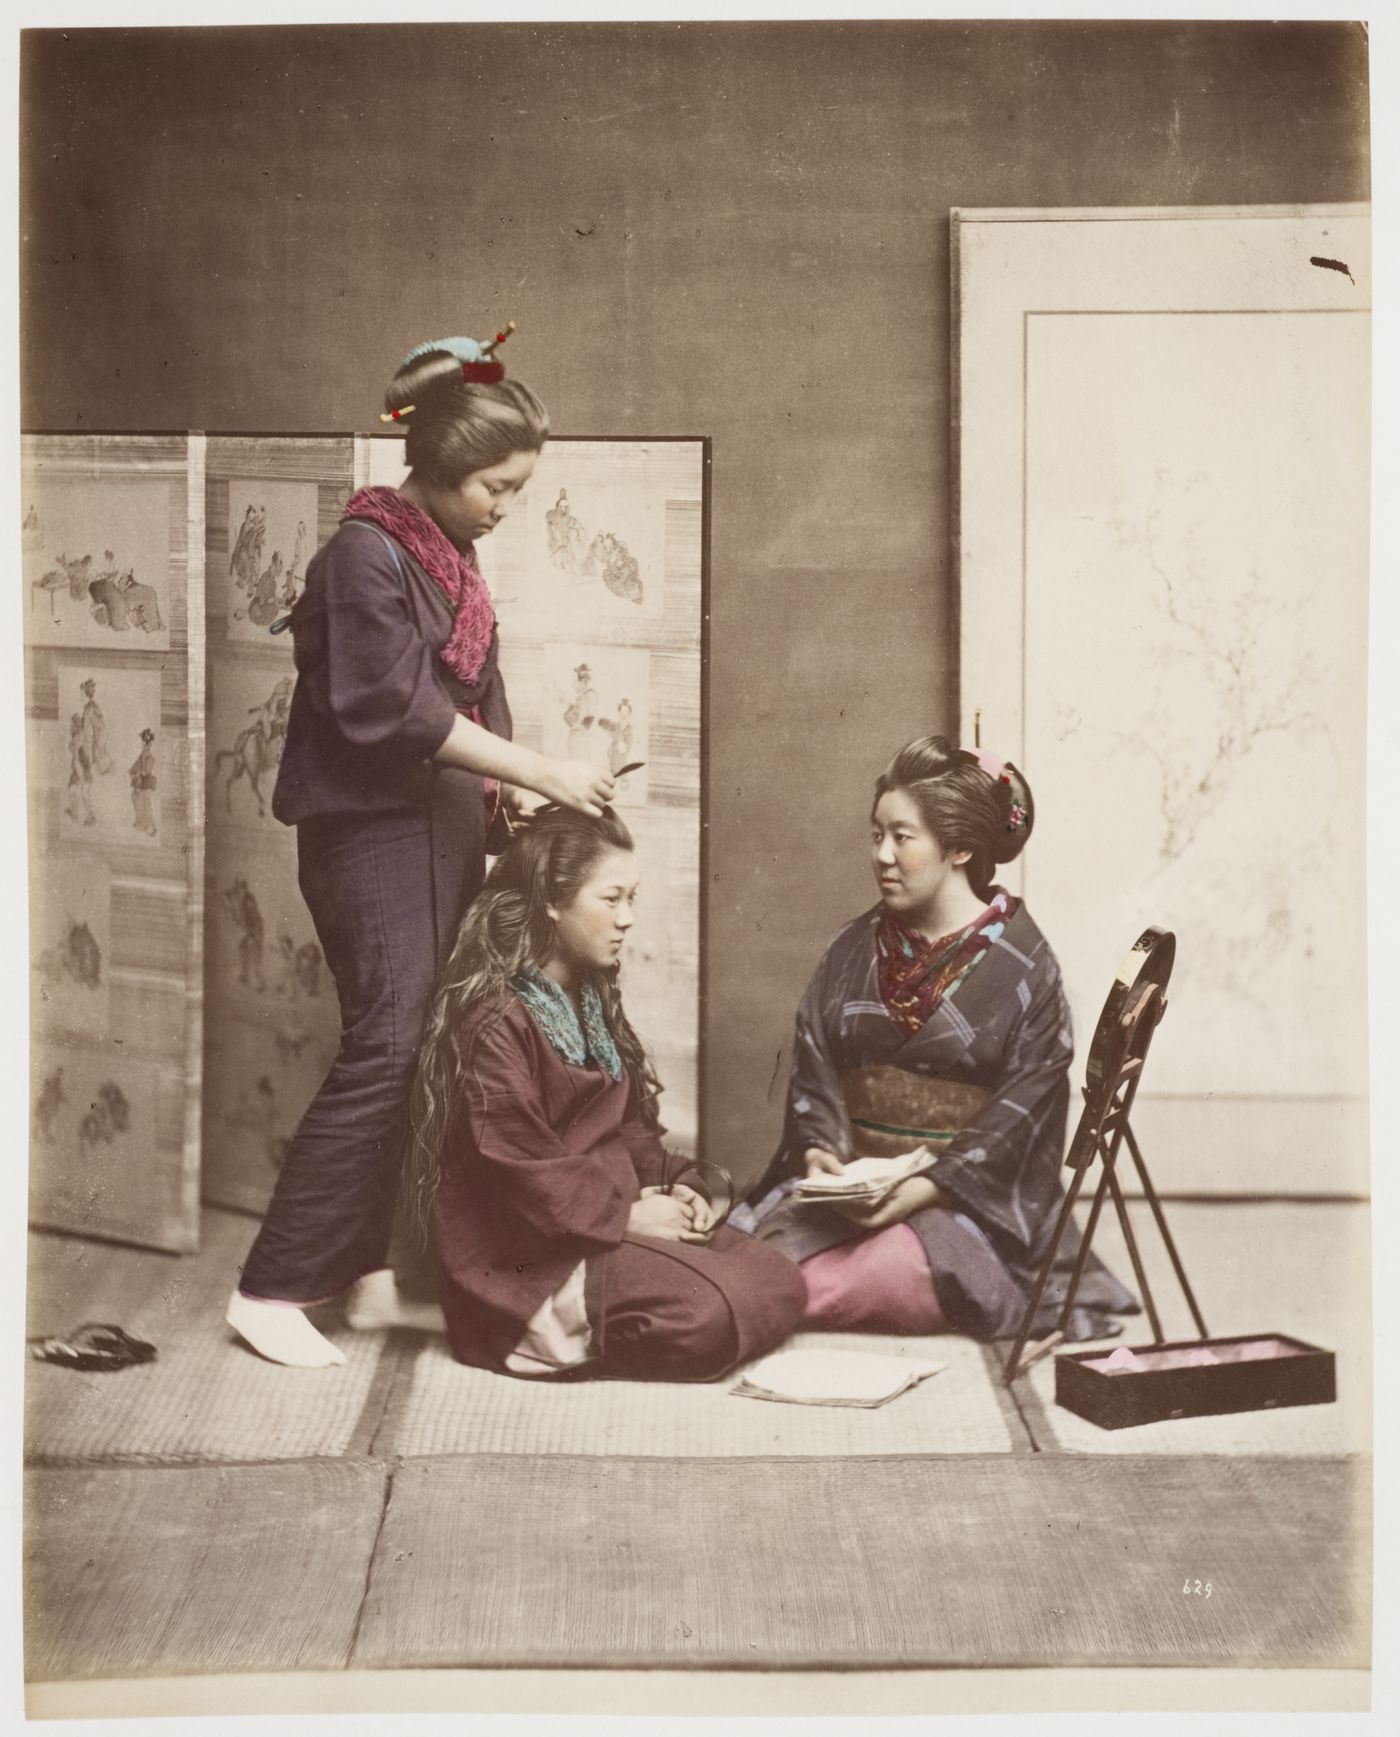 Group portrait of three women grooming, Japan